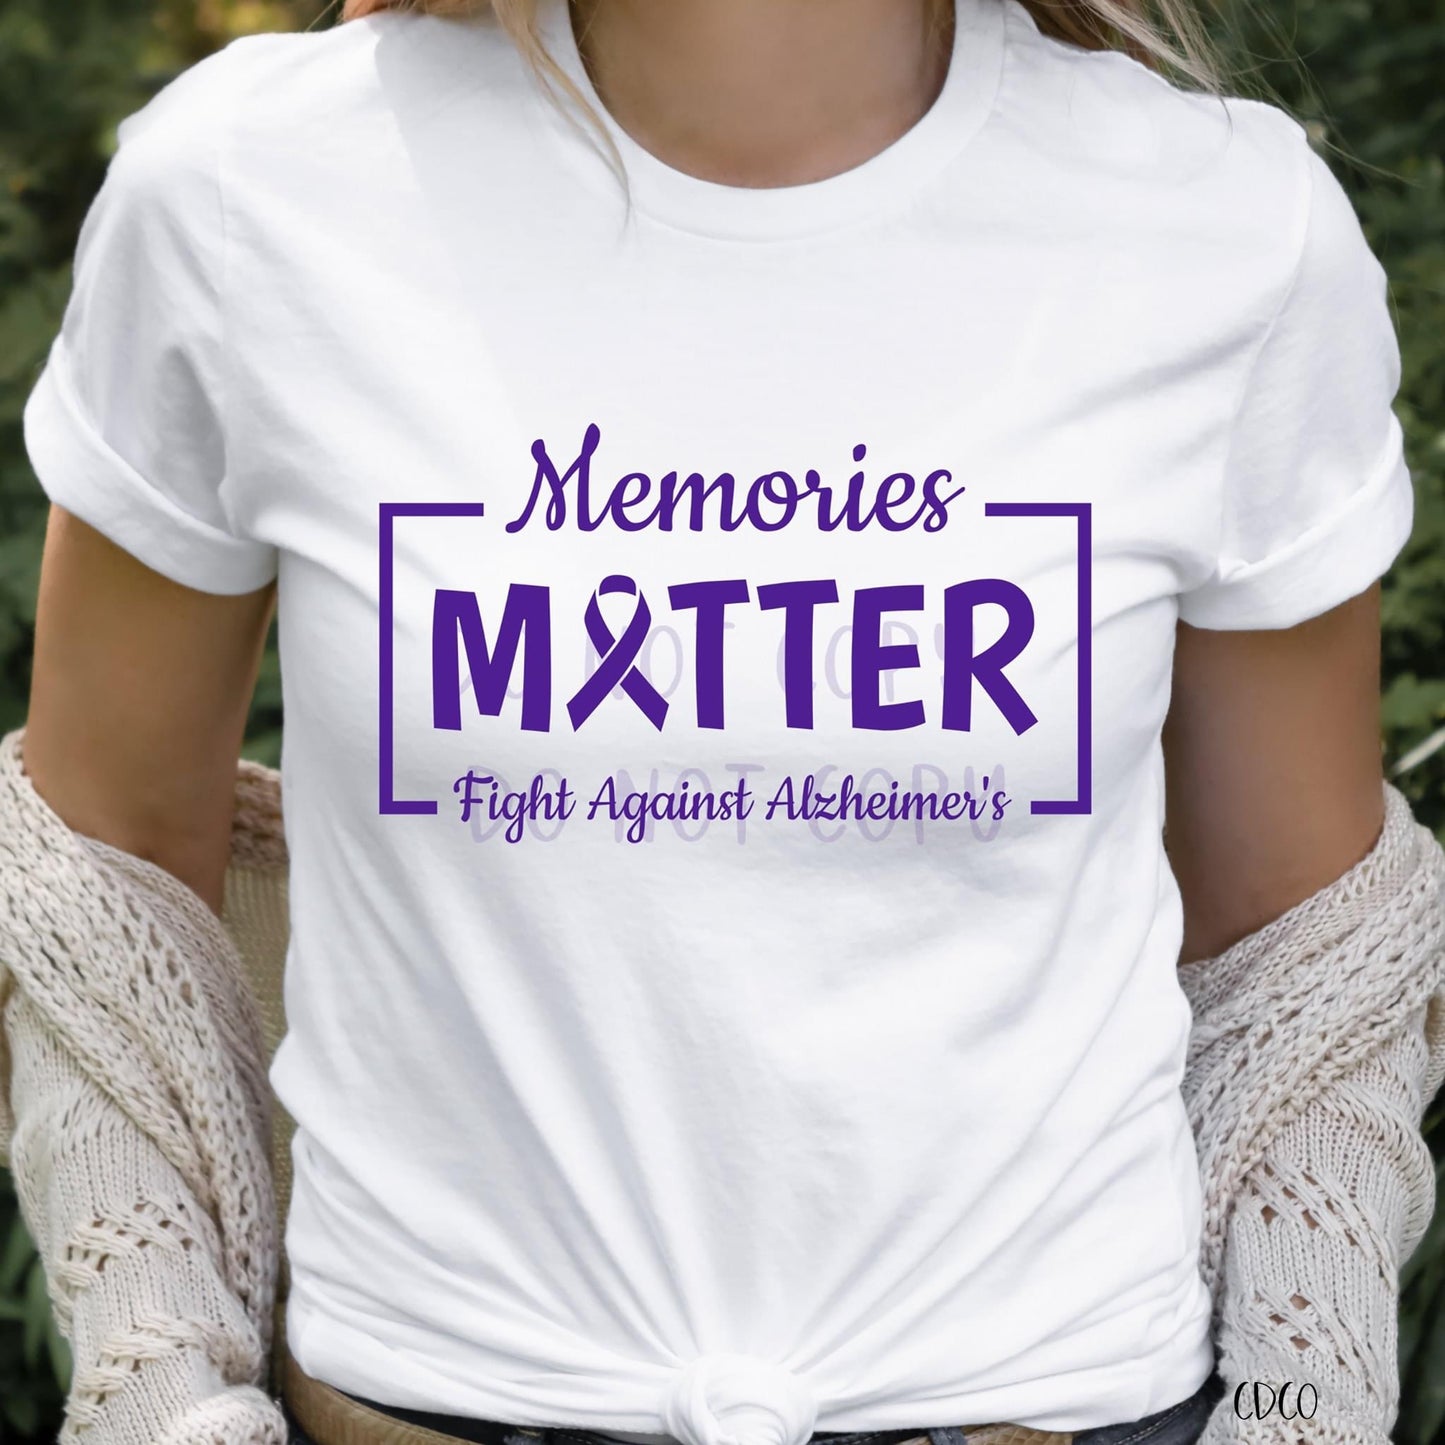 Memories Matter Alzheimer's Awareness (325°)